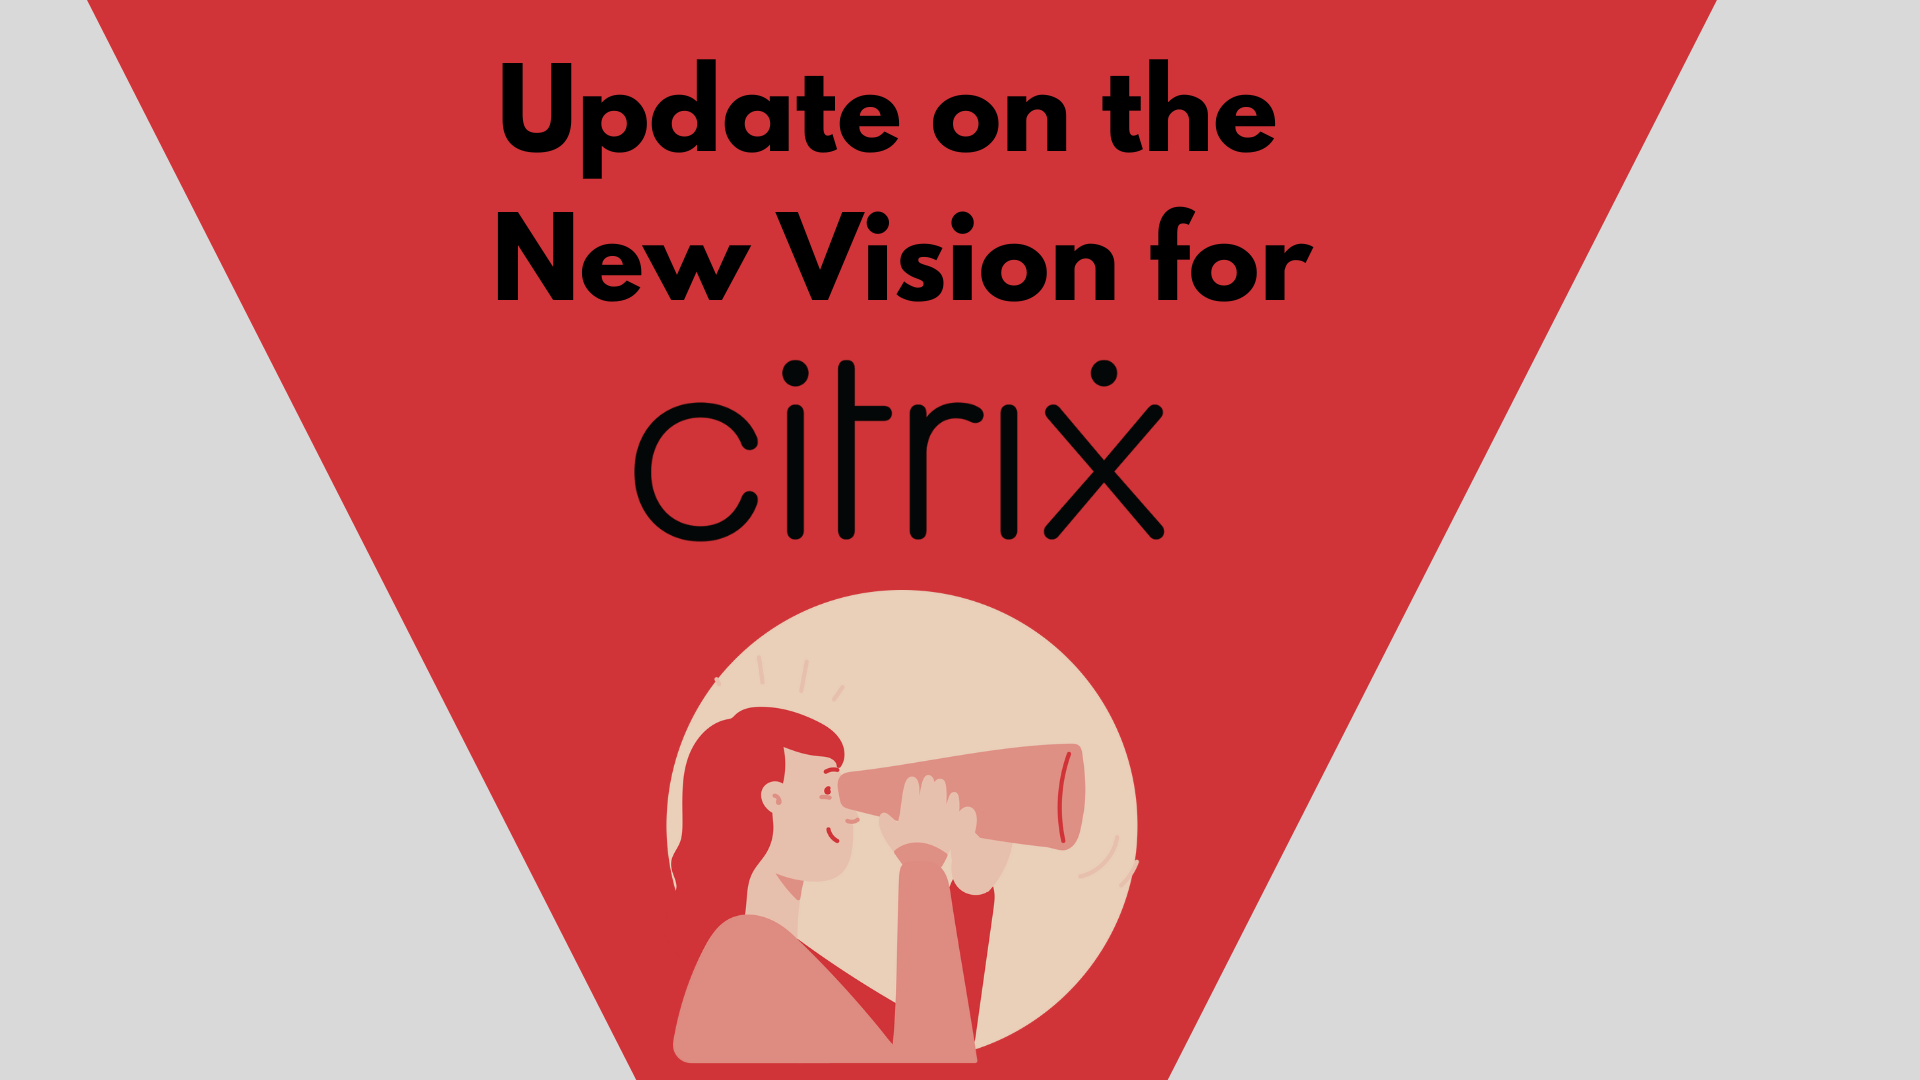 Citrix's new vision, citrix updates, citrix partner